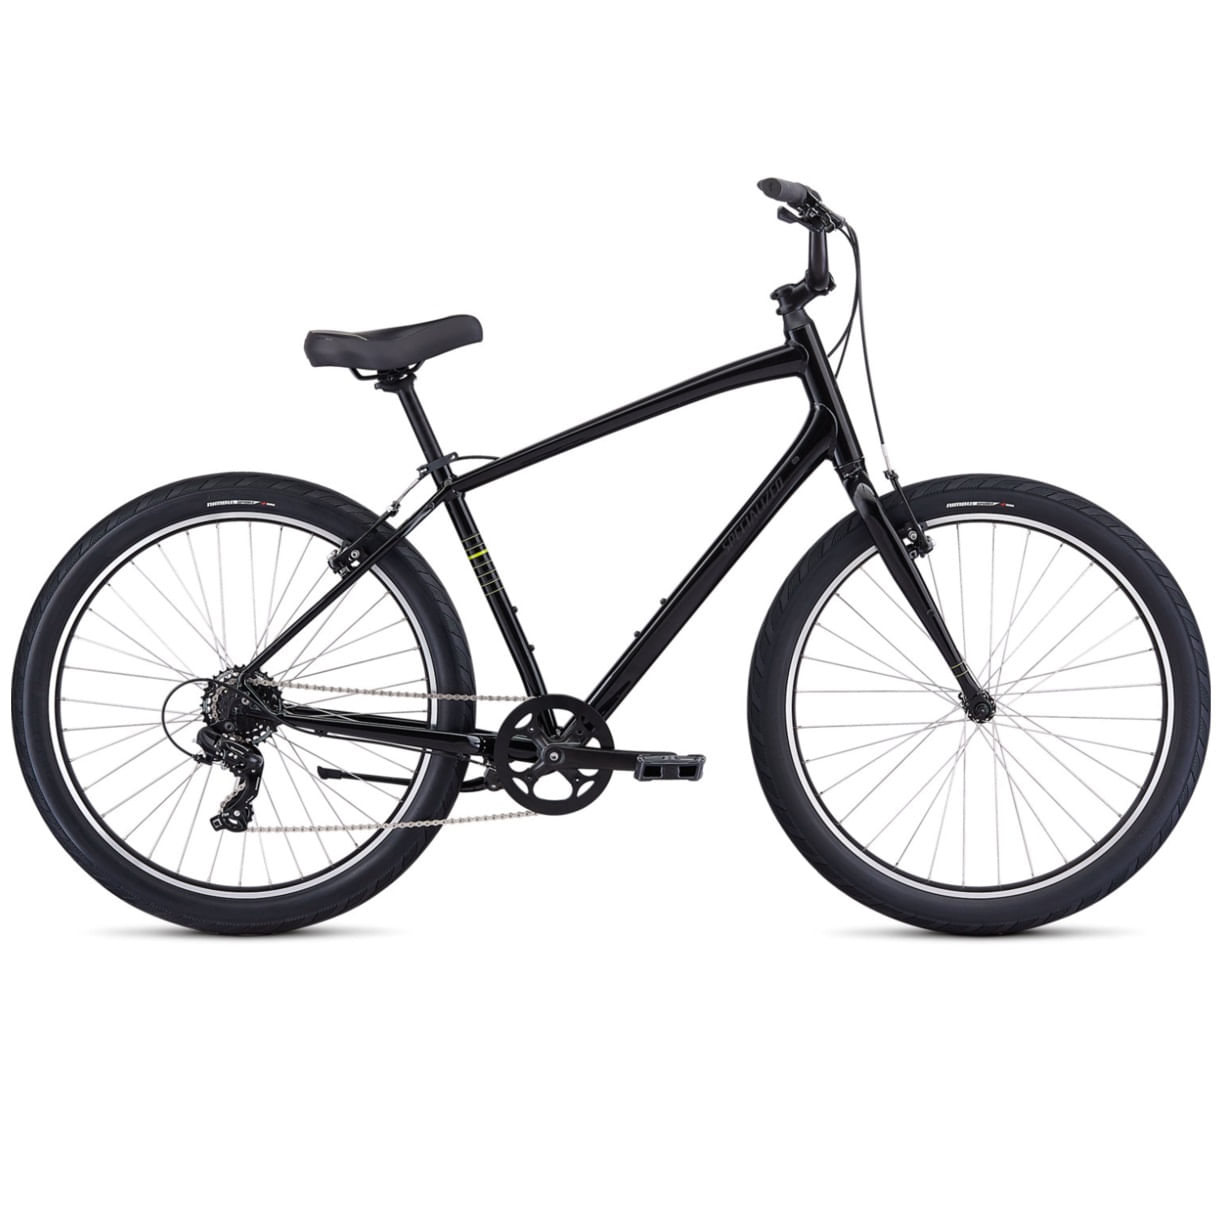 Bicicleta-Urbana-Aro-650b-Specialized-Roll-2021-Preta---104118